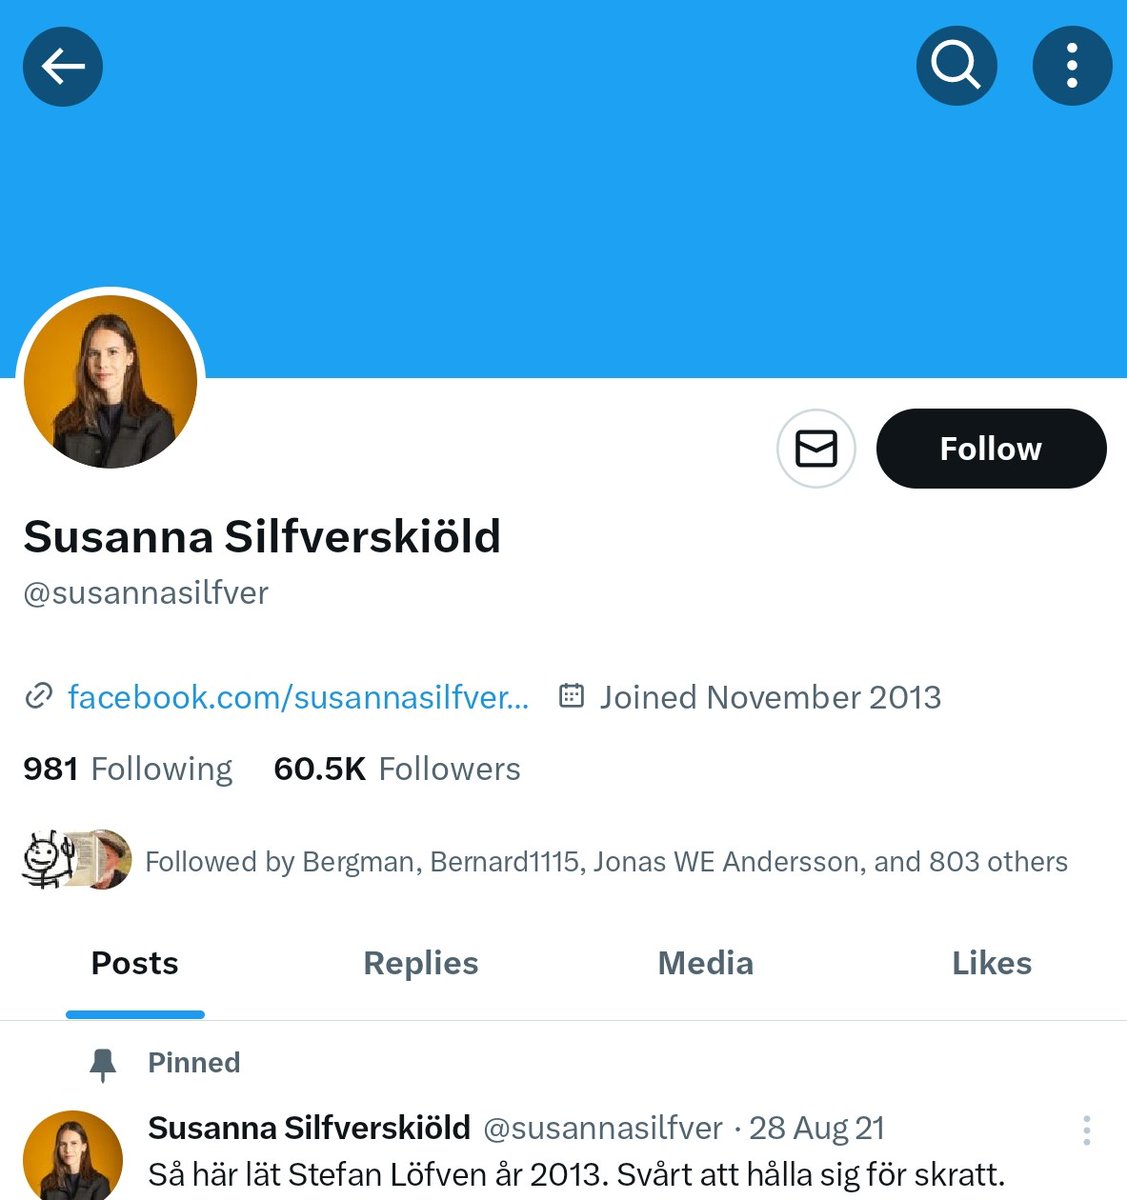 Moderaterna kallar till möte om SD:s trollfabrik, men avlönar själva den svenska högerns största troll @susannasilfver.
Hon har ALDRIG skrivit i sin bio att hon jobbar för statsministern på regeringskansliet.